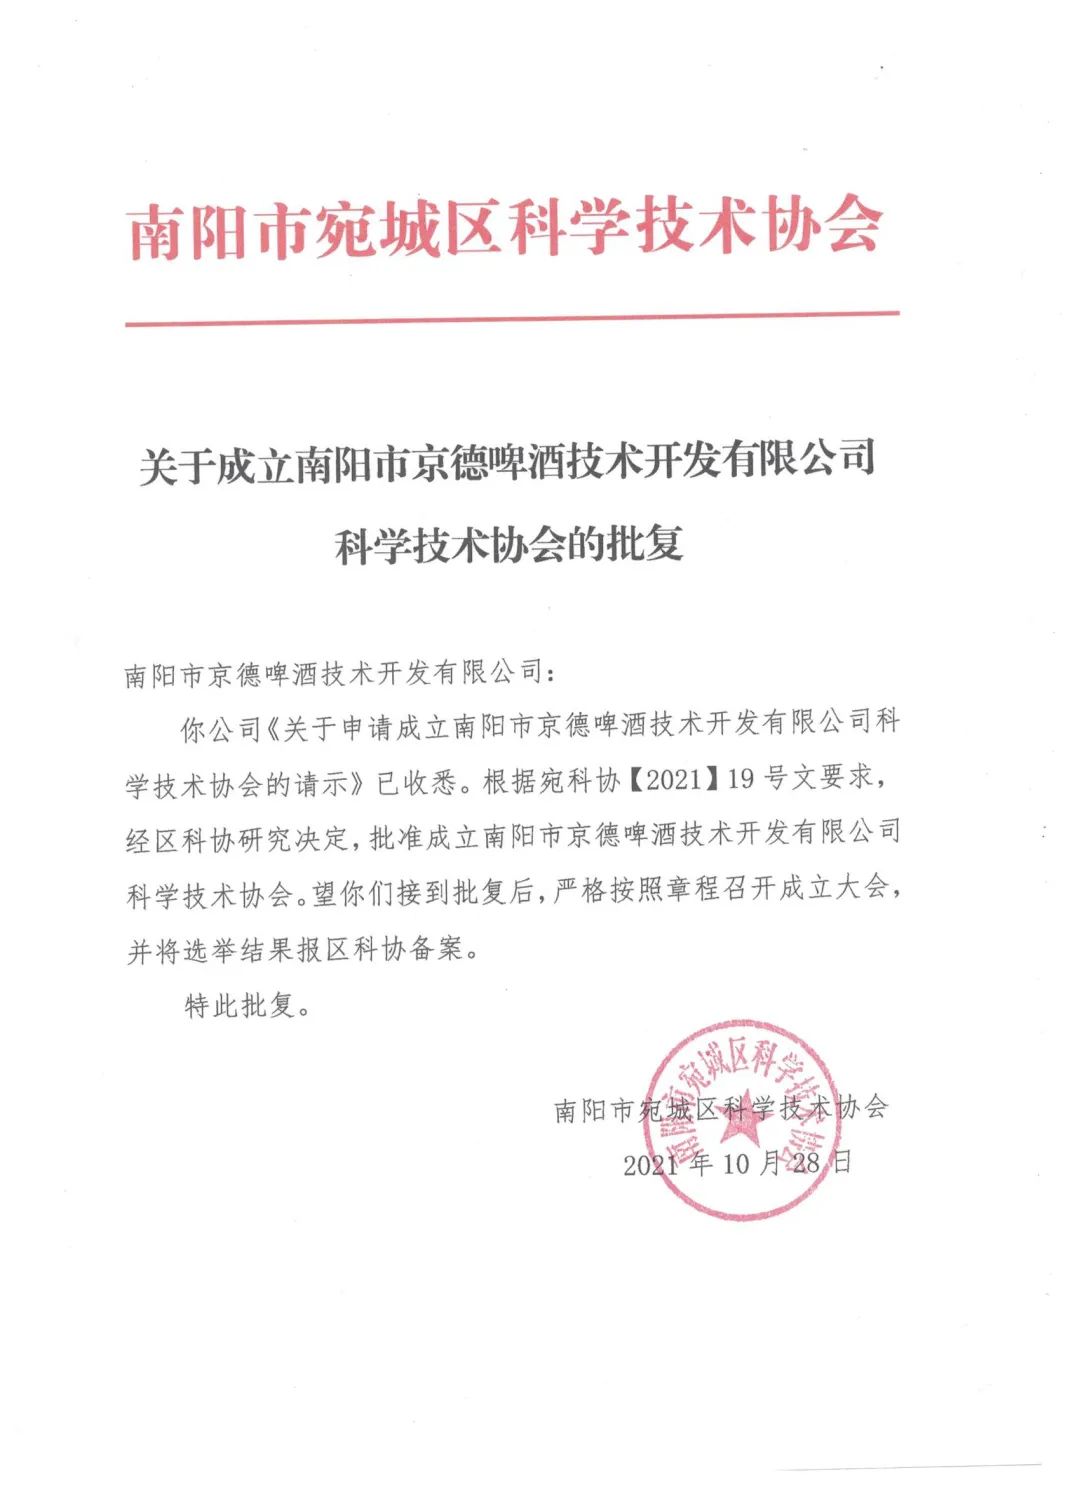 南阳京德啤酒技术开发有限公司 科学技术协会成立